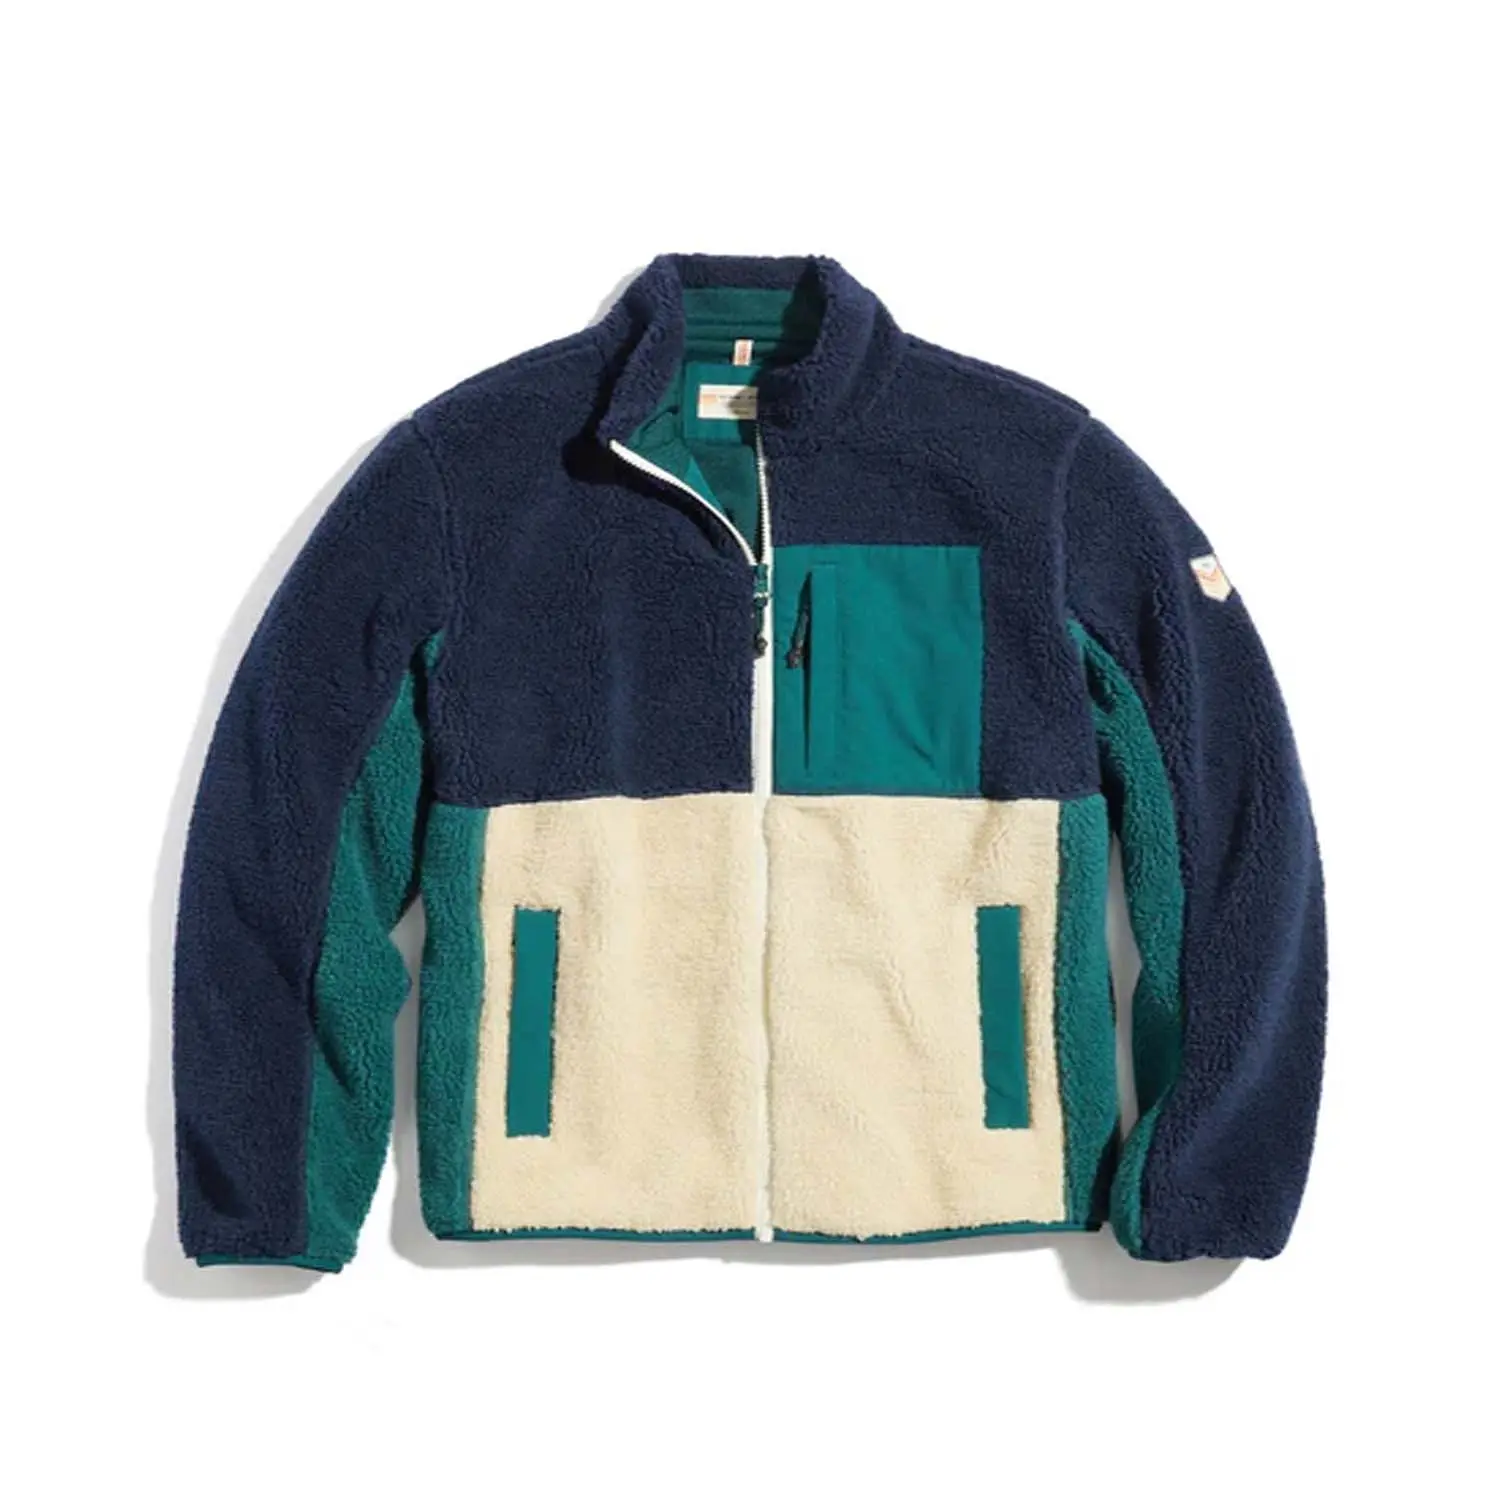 도매 양털 안감 플란넬 셔츠 셰르파 전체 지퍼 재킷 격자 무늬 코튼 소프트 따뜻한 코트 후드 셔츠 재킷